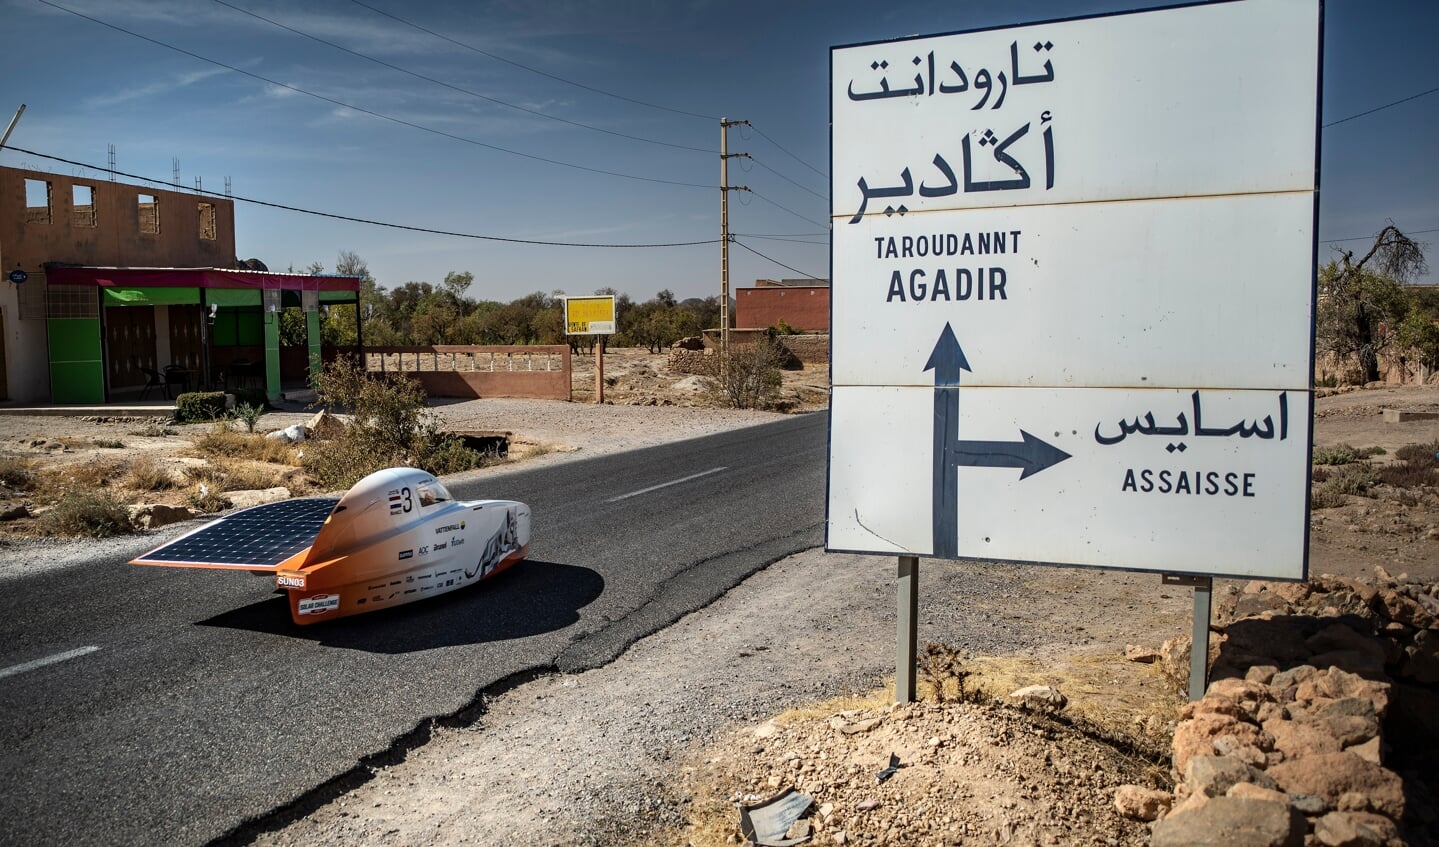 Nuna11 in Agadir Marokko.